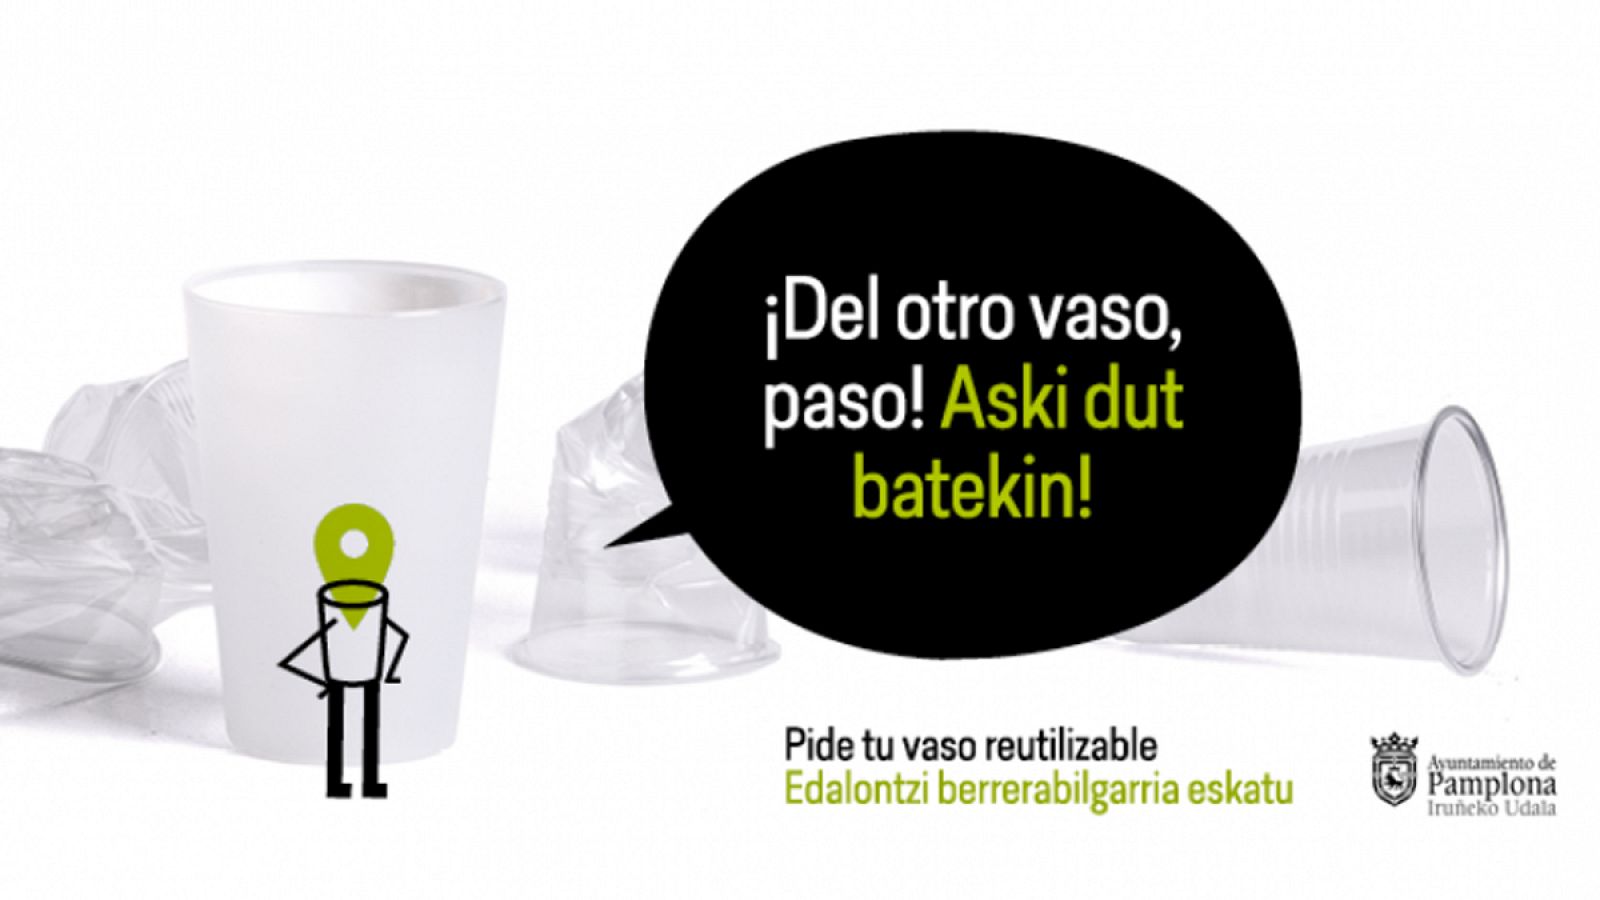 Campaña del Ayuntamiento de Pamplona para usar vasos reutilizables en los Sanfermines